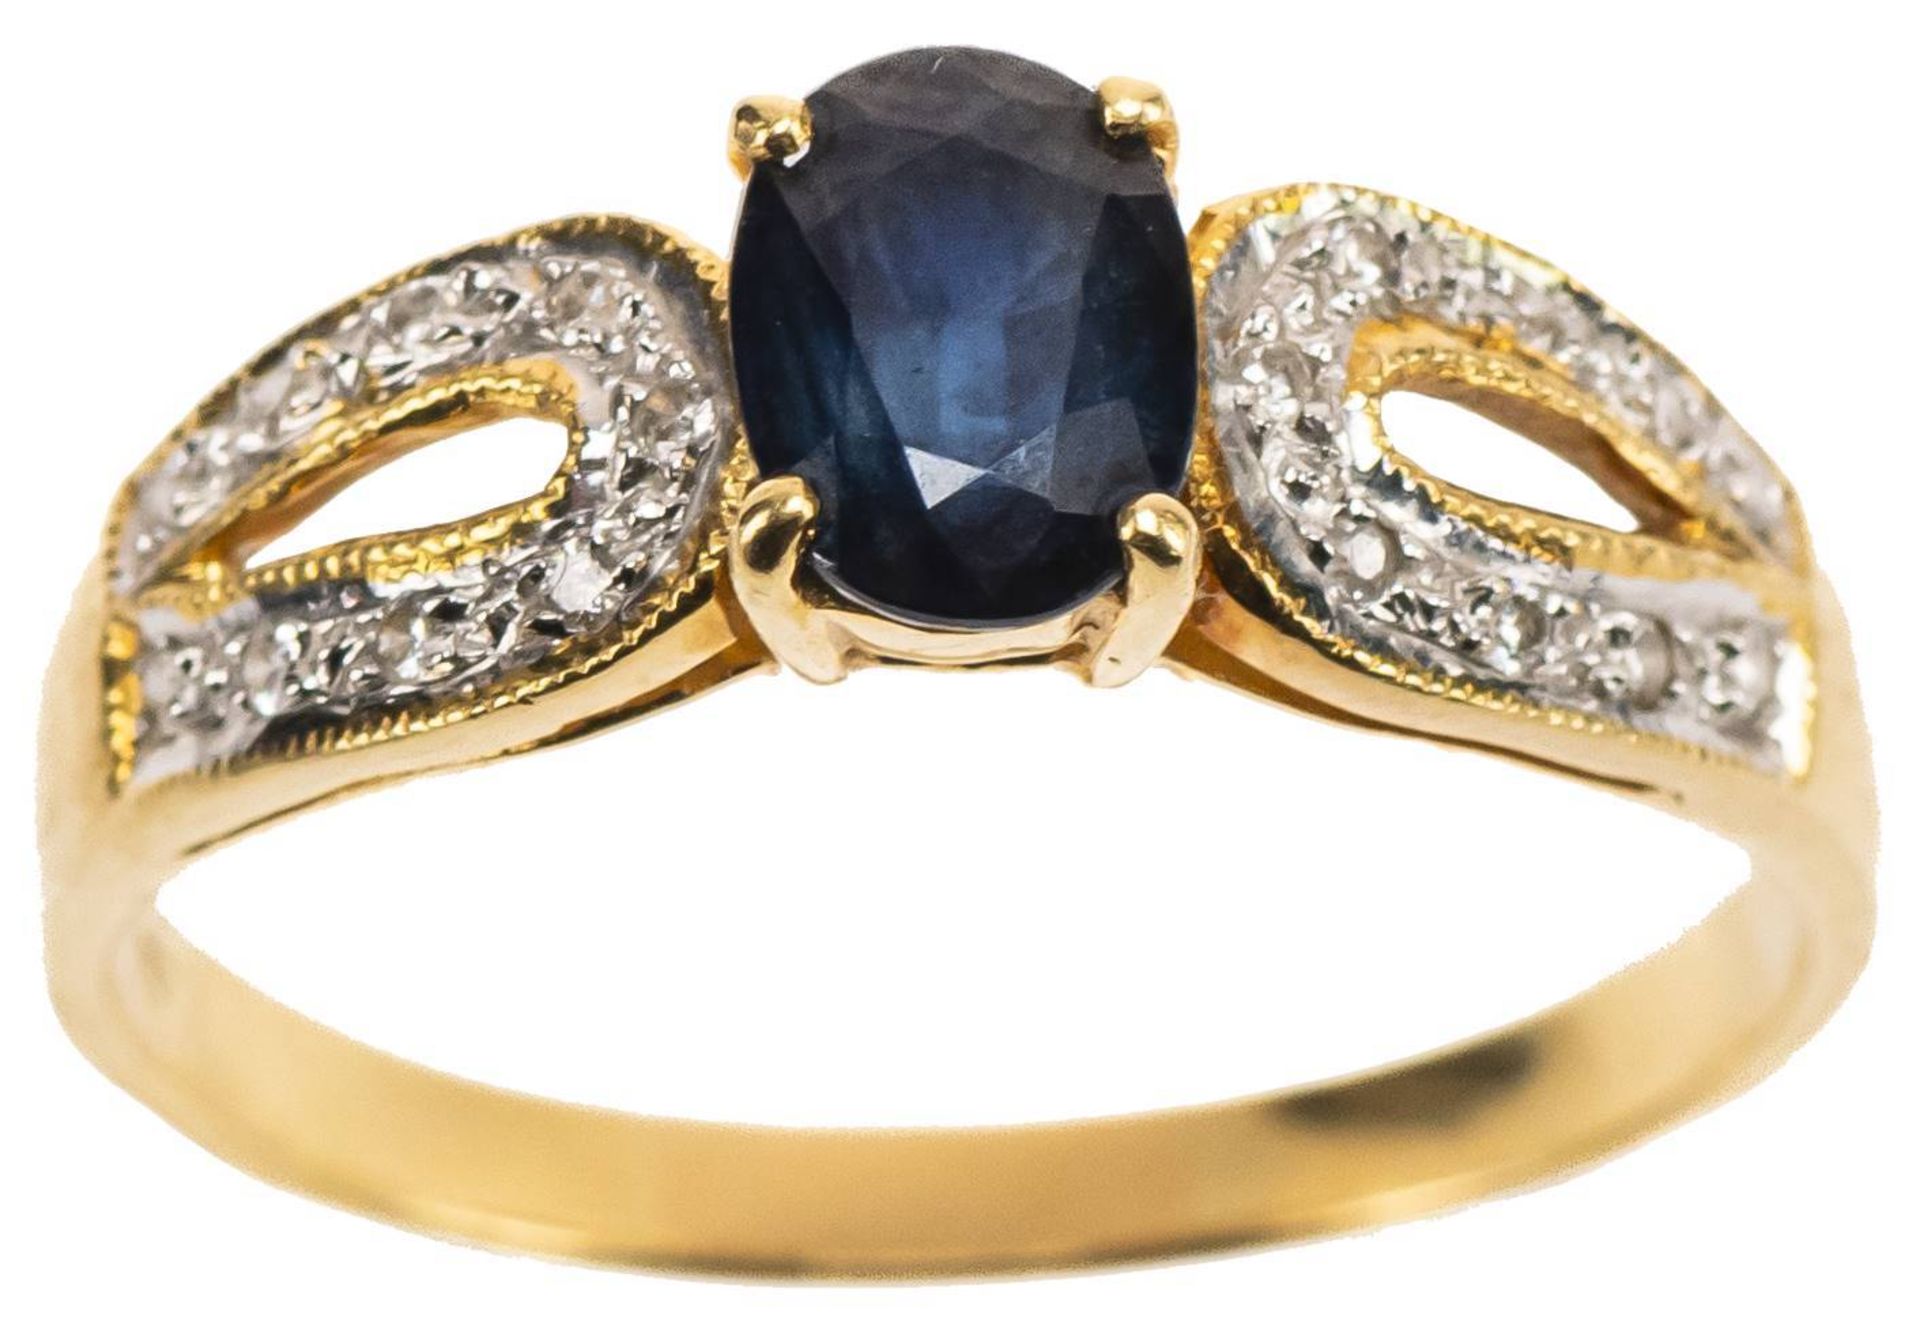 Saphir Diamanten Ring, 750 Gelbgold, 1Saphir in Ovalschliff ca. 1,20ct, 18 Diamanten zus. ca. 0,